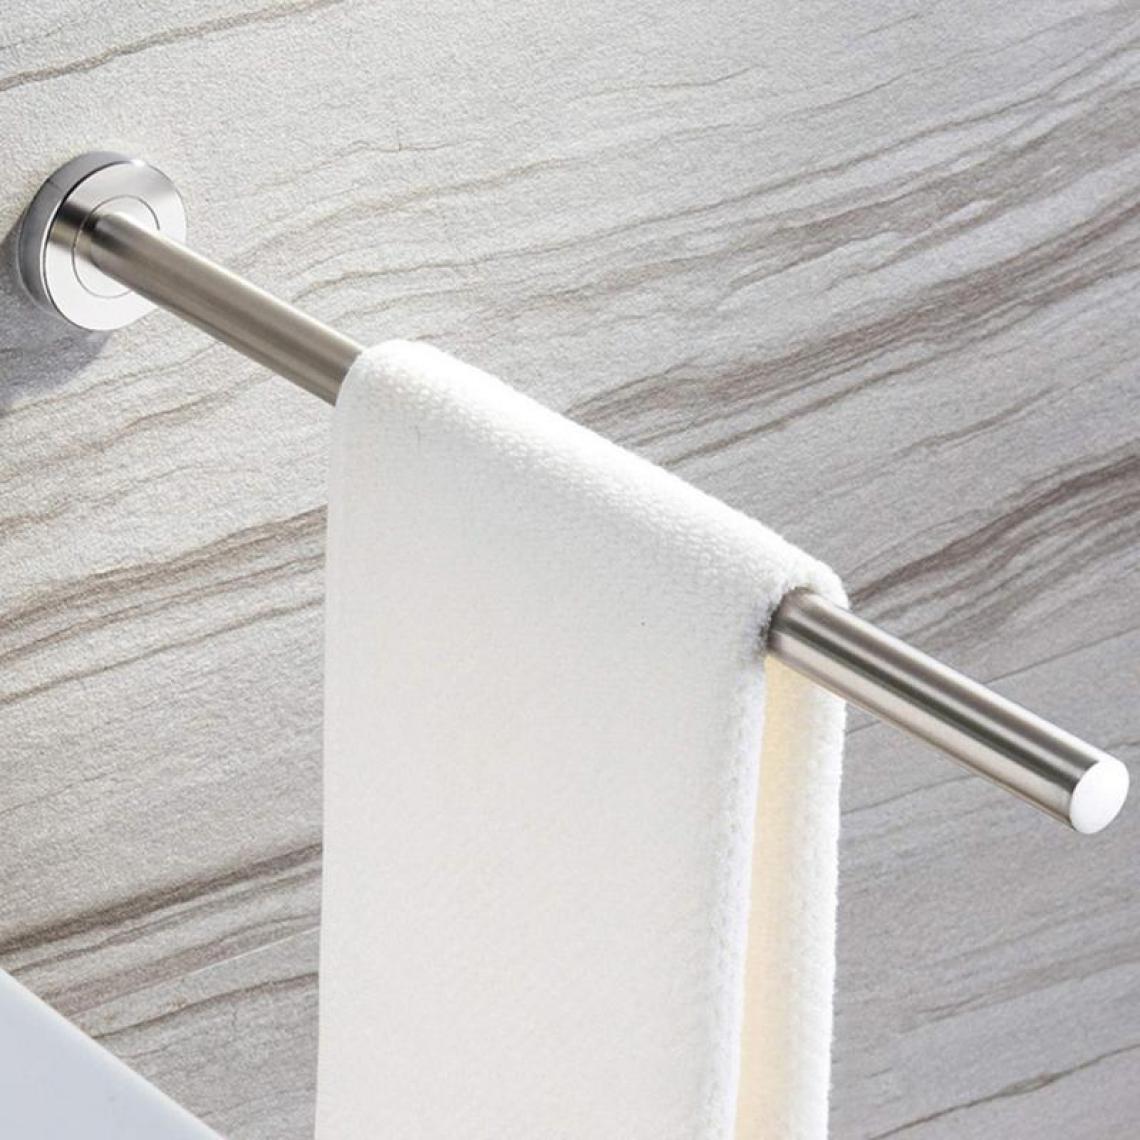 Universal - Porte-serviettes vertical en acier inoxydable brossé Porte-serviettes mural pour la maison Cuisine WC WC 40cm |(Argent) - Porte-serviettes